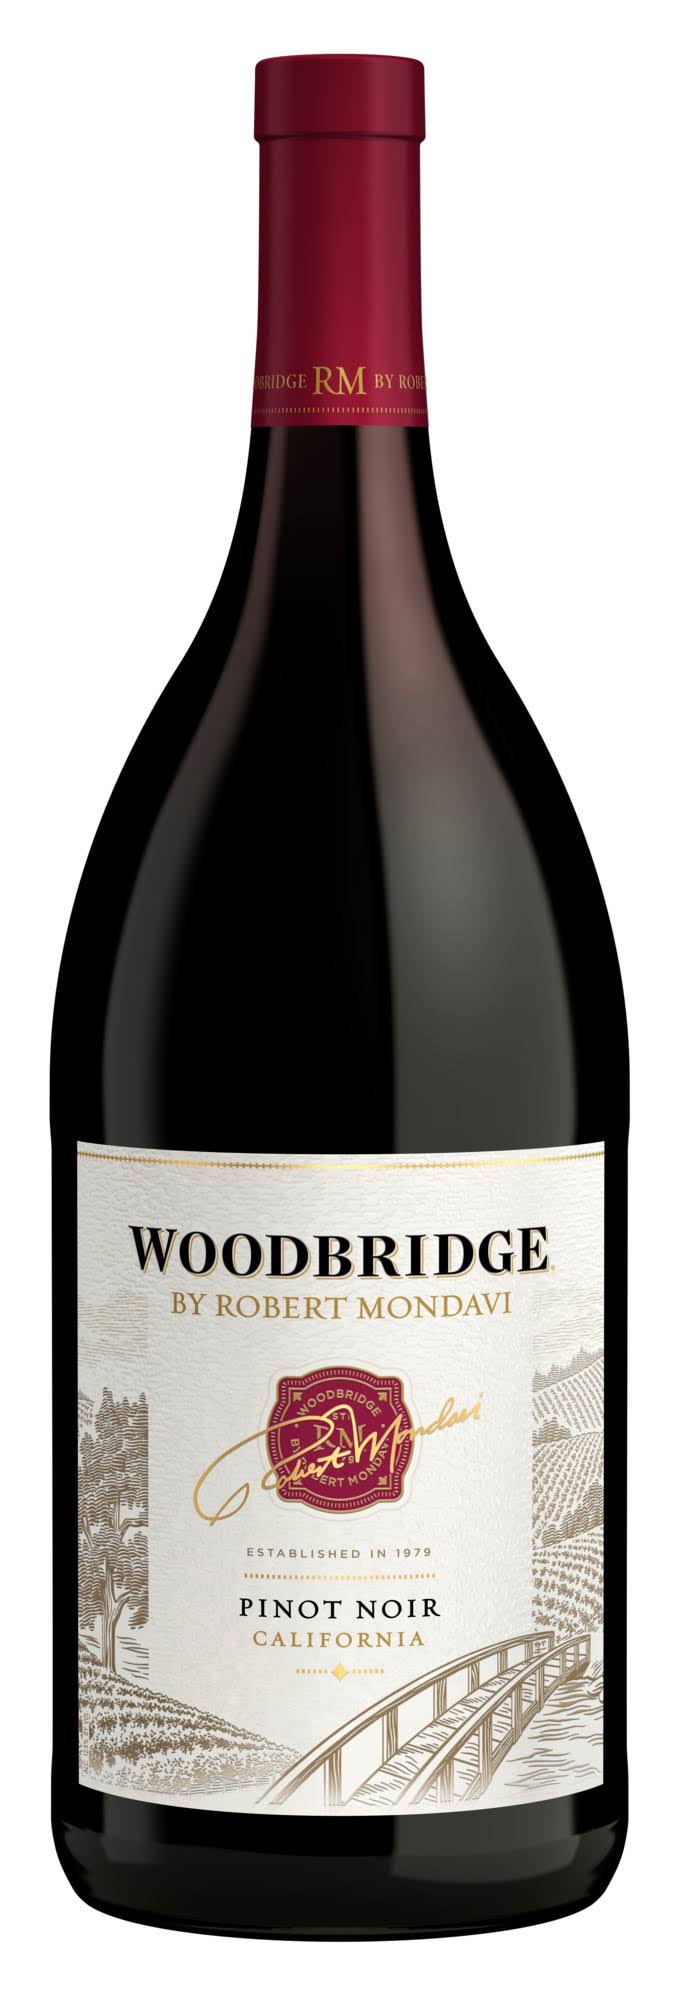 Woodbridge By Robert Mondavi Pinot Noir - 2006